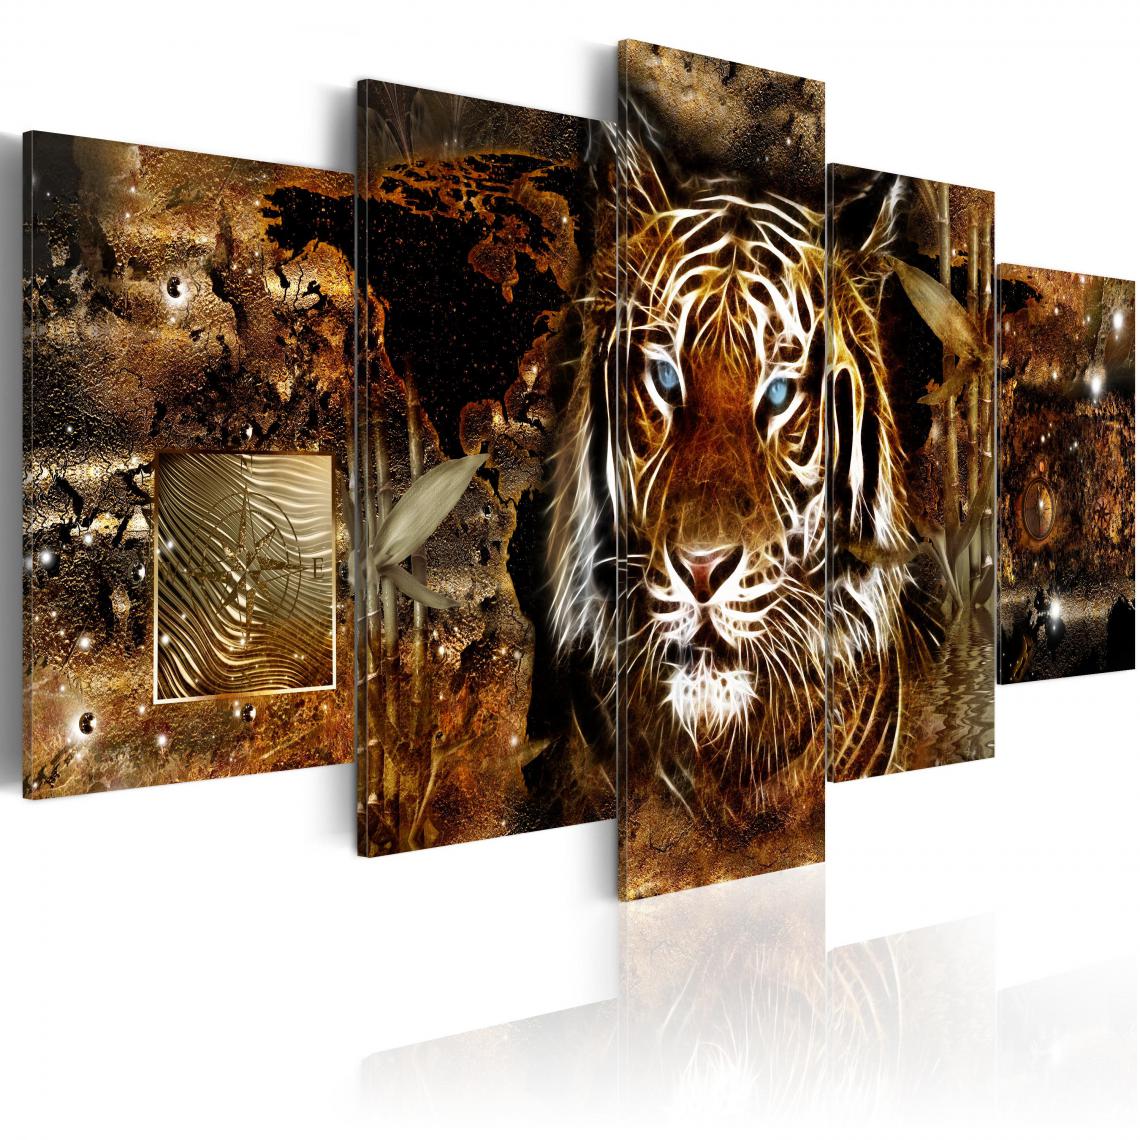 Decoshop26 - Tableau sur toile en 5 panneaux décoration murale image imprimée cadre en bois à suspendre Jungle dorée 100x50 cm 11_0002910 - Tableaux, peintures